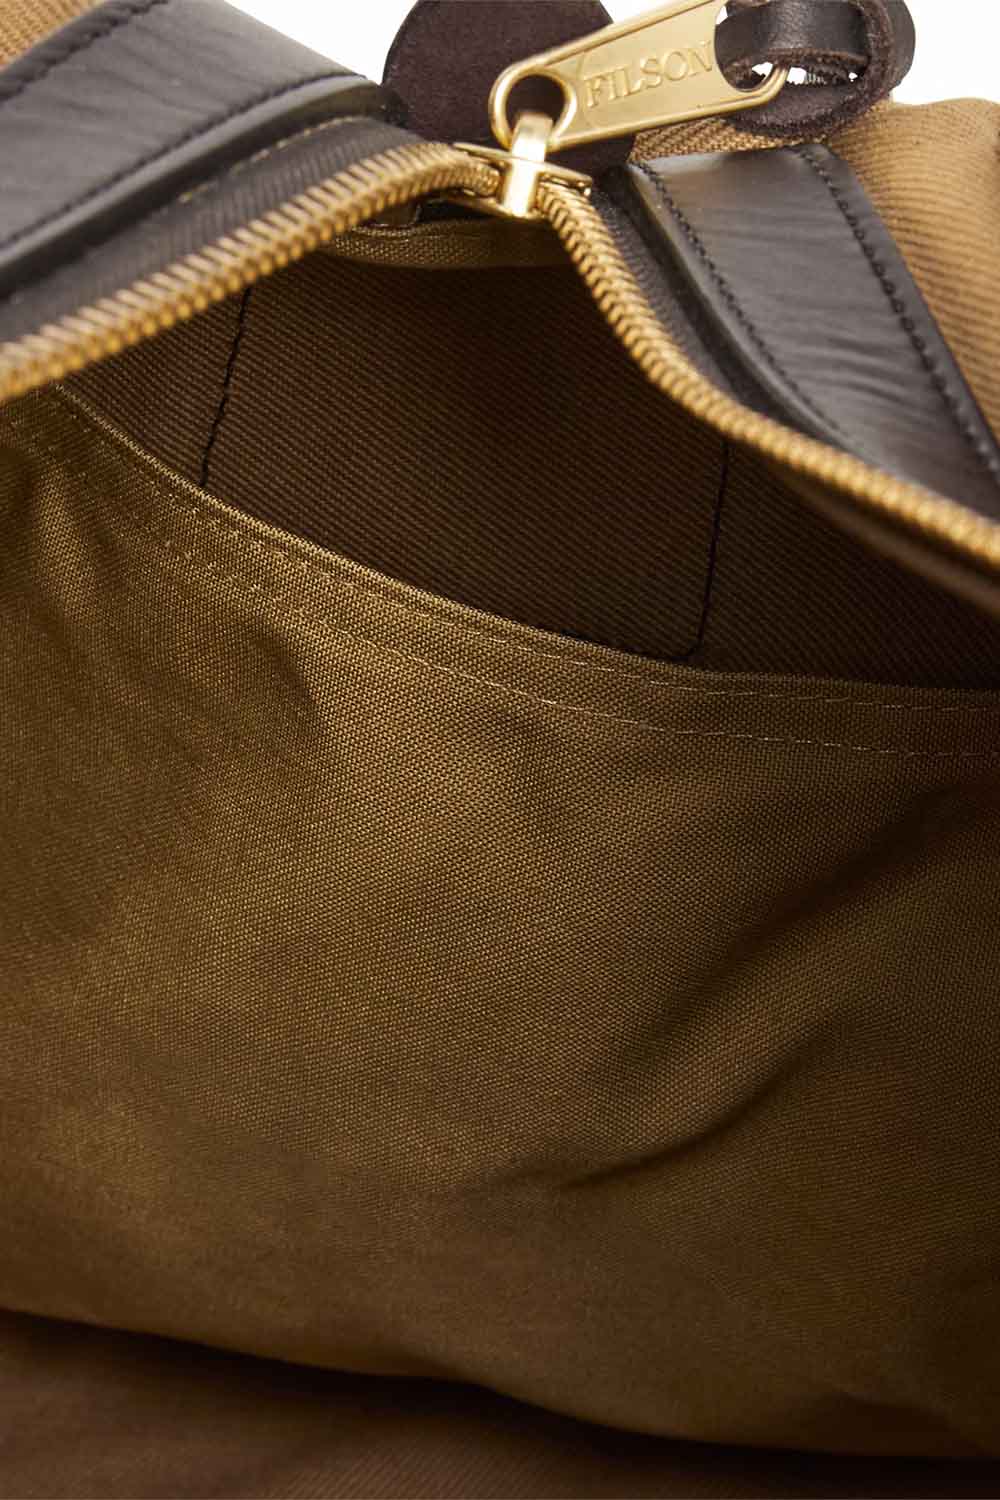 Filson - Medium Duffle Bag - Tan - Pocket